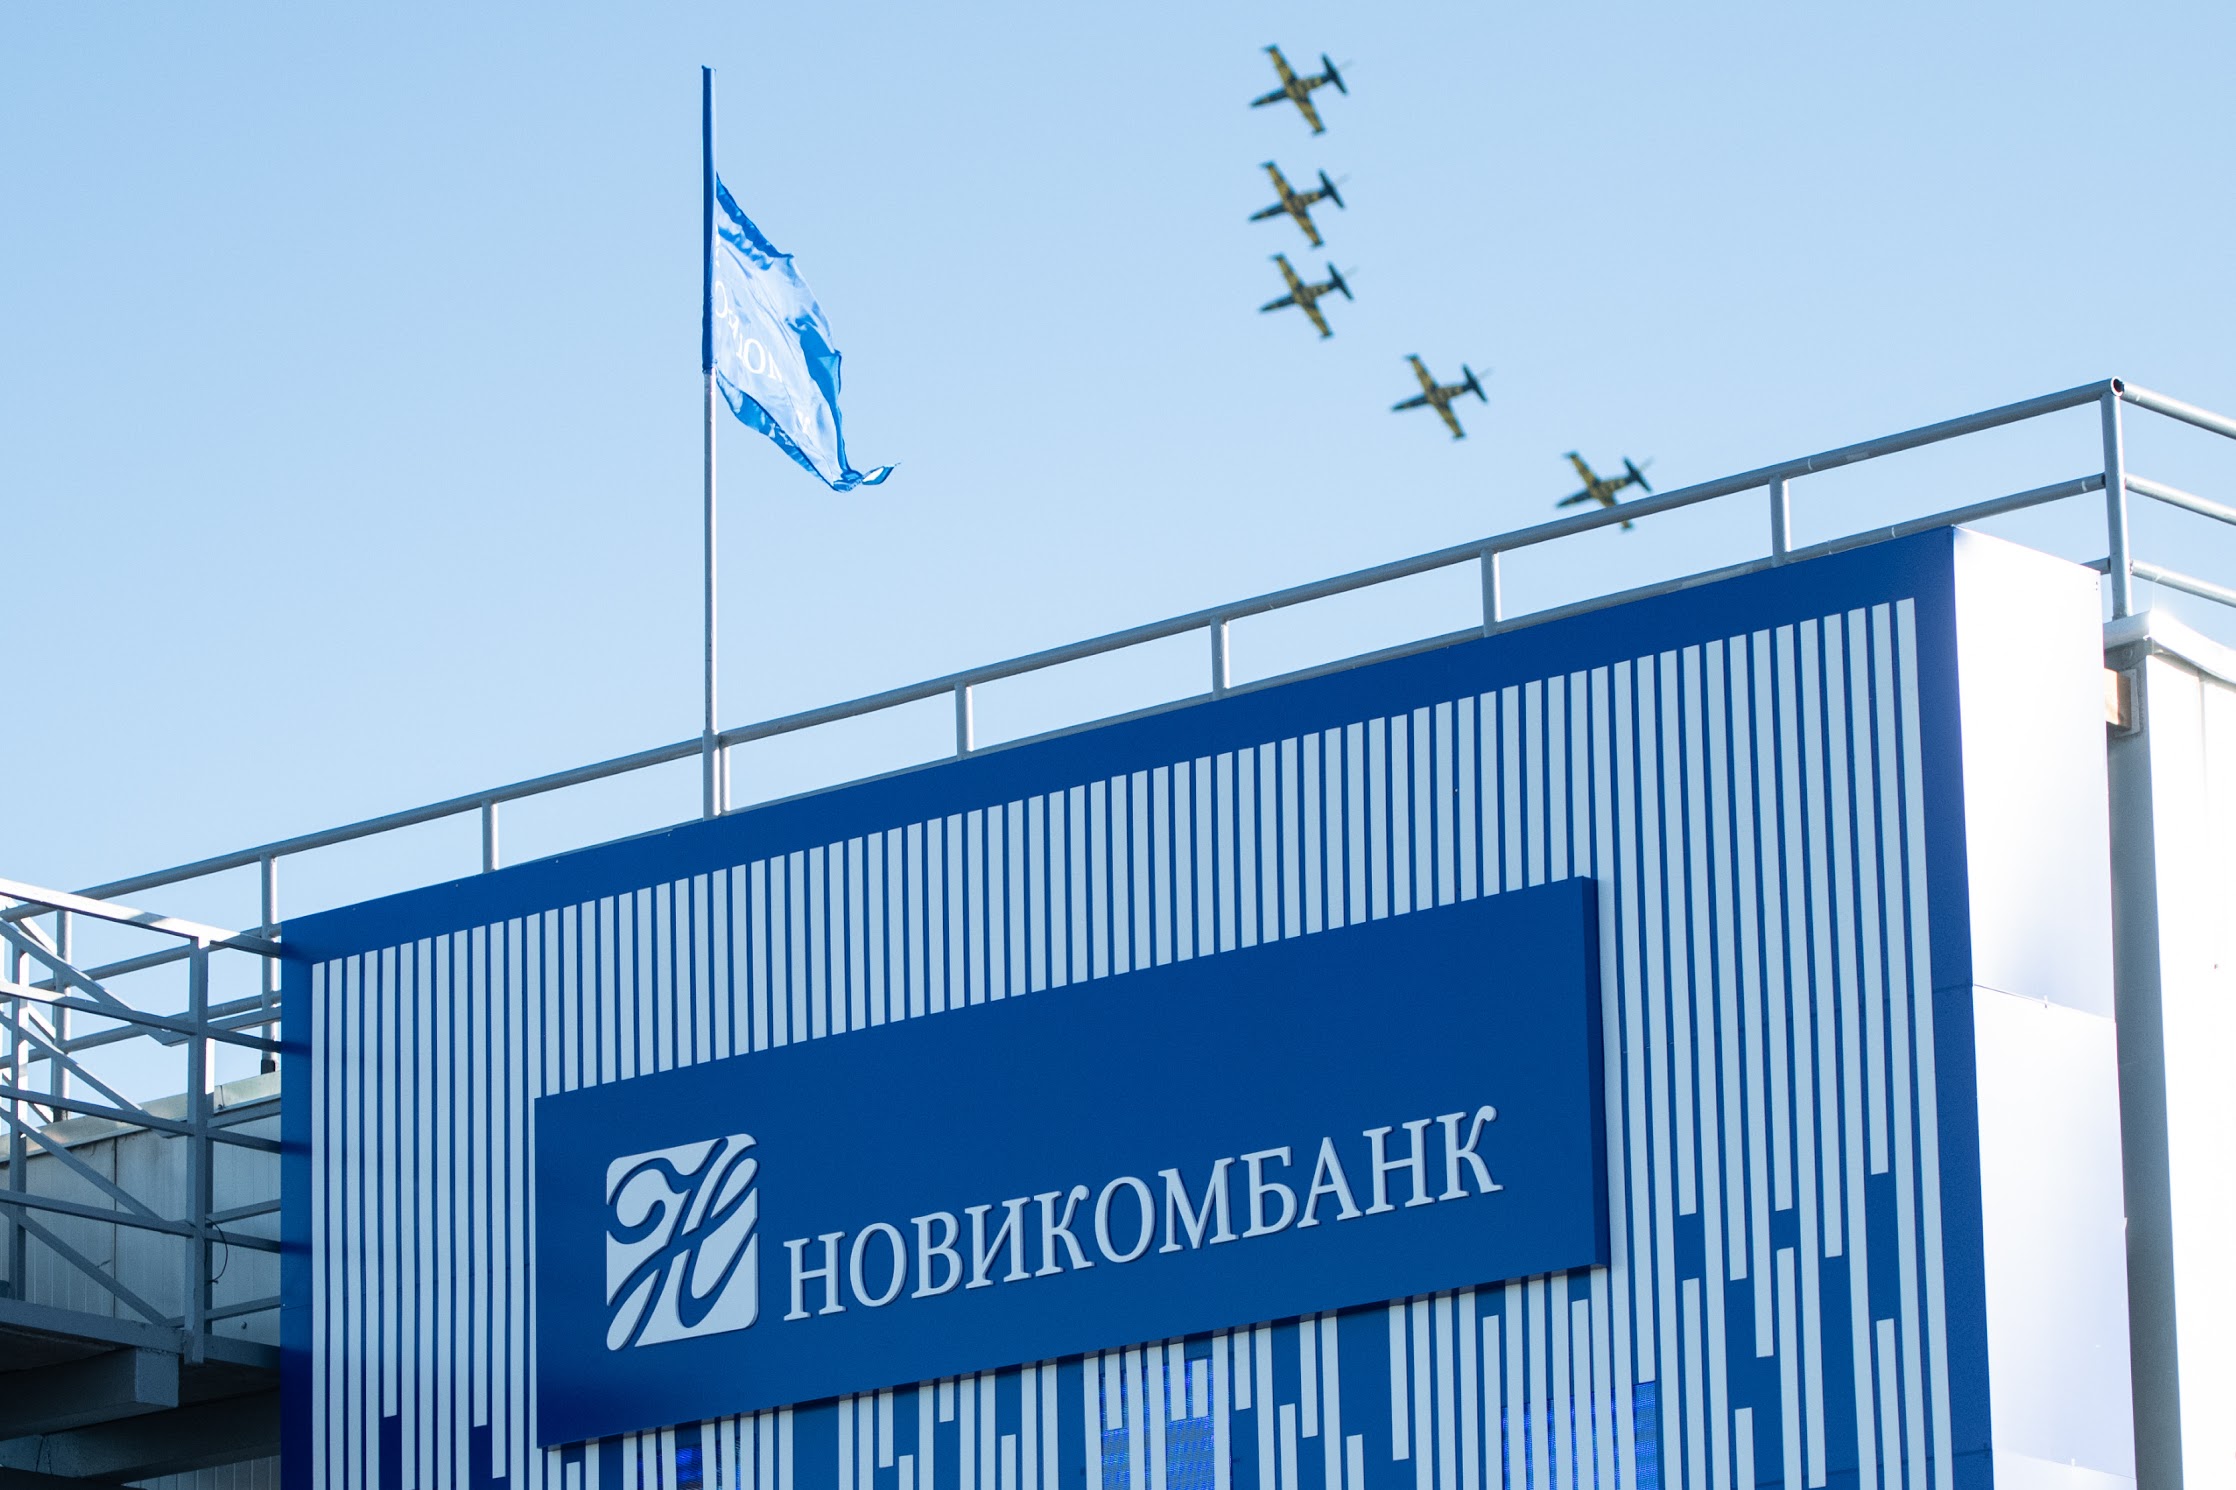 Новикомбанк финансирует производство новейших гражданских самолетов